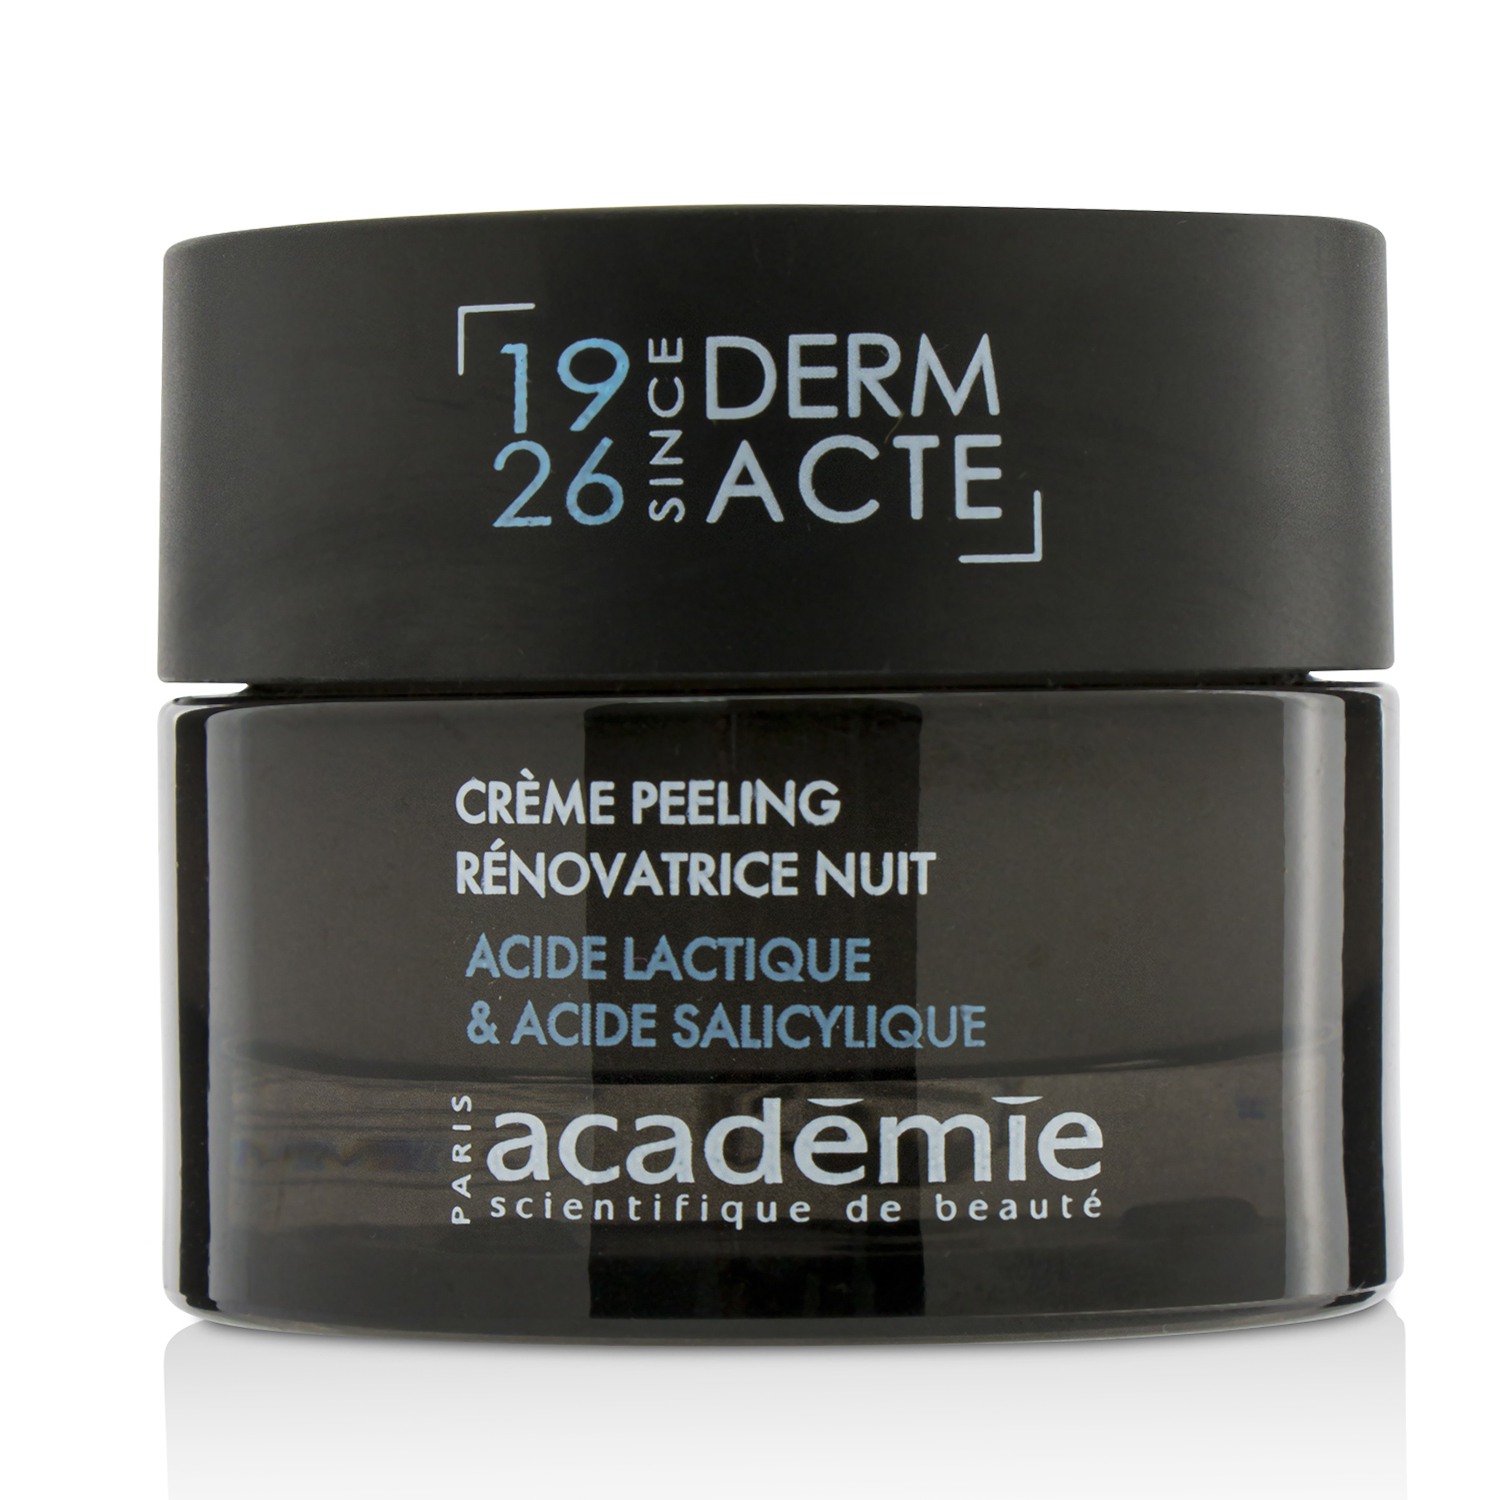 Derm Acte Restorative Exfoliating Night Cream (Unboxed) Academie Image